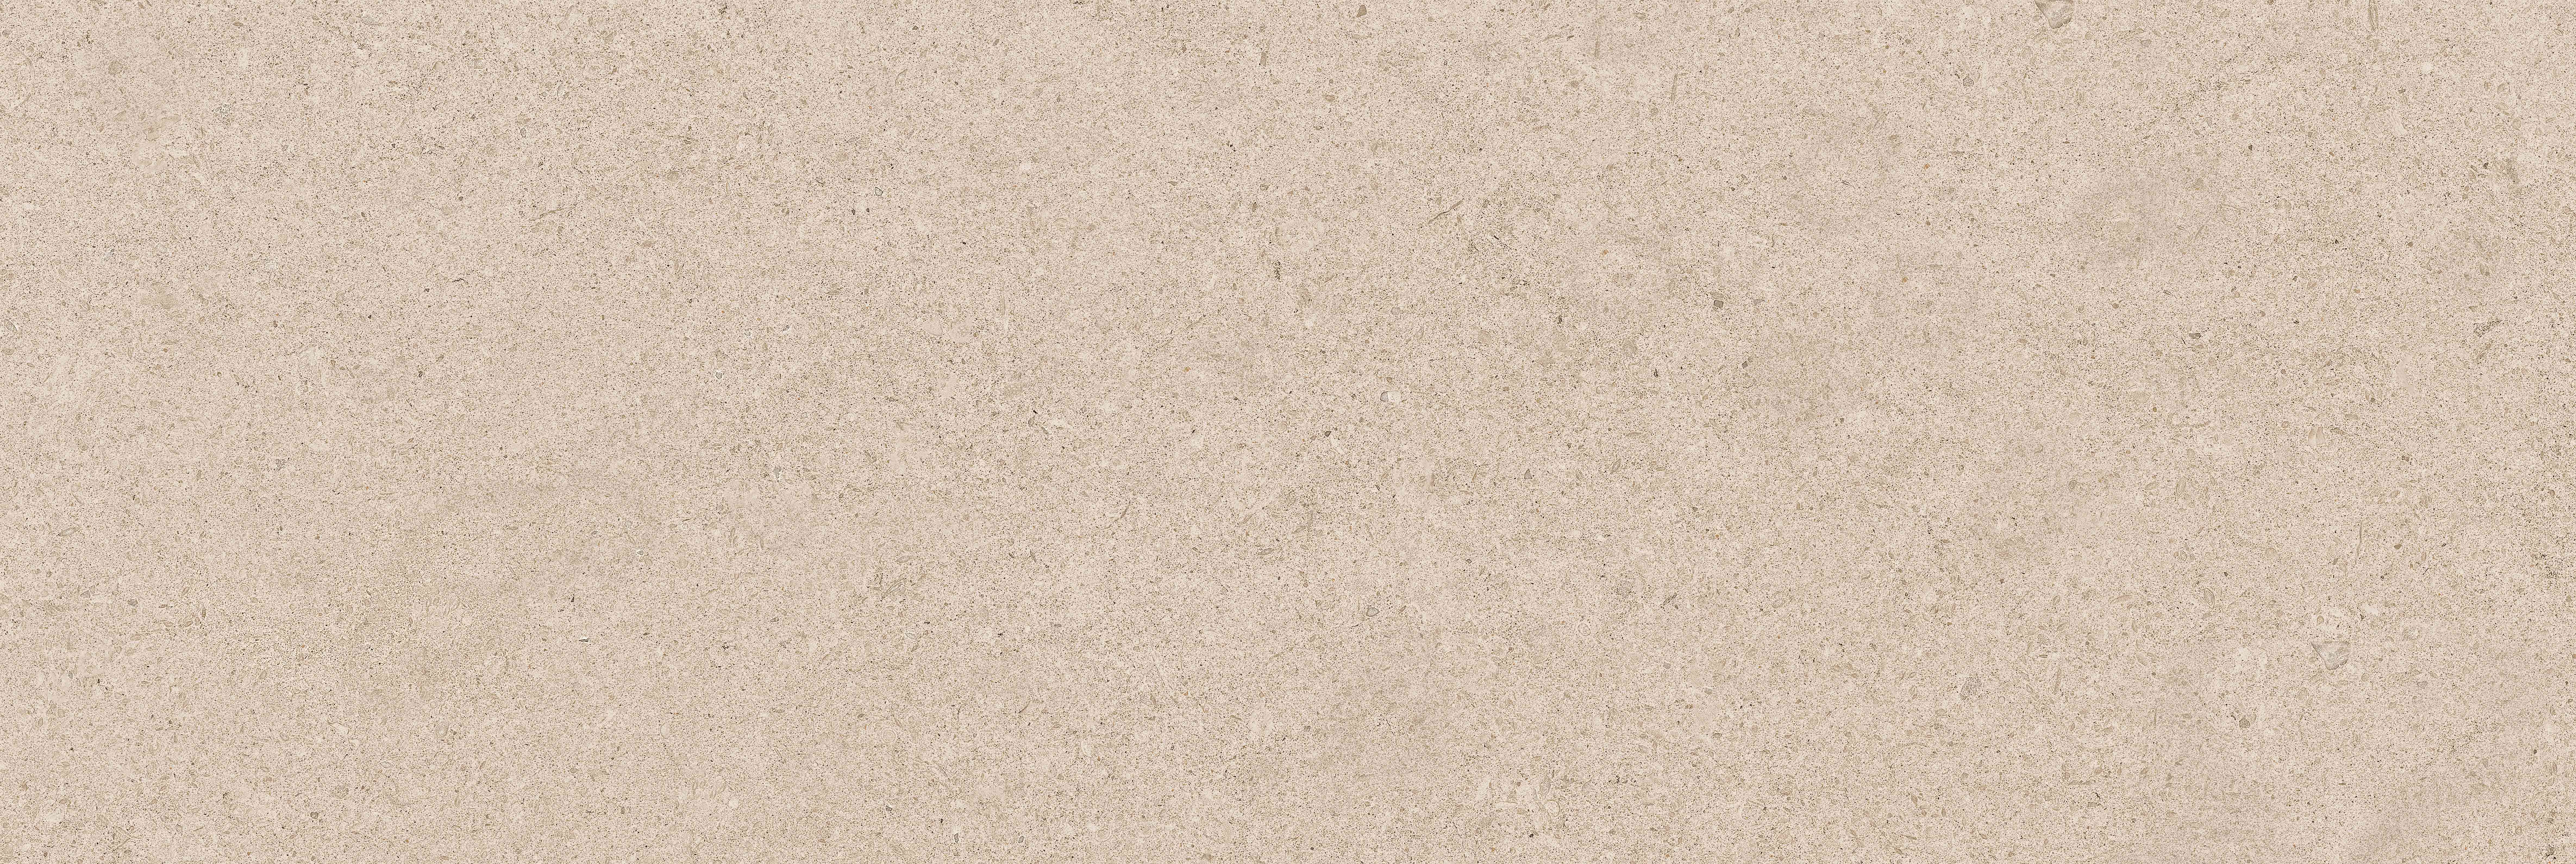 Плитка Salutami granite 20х60